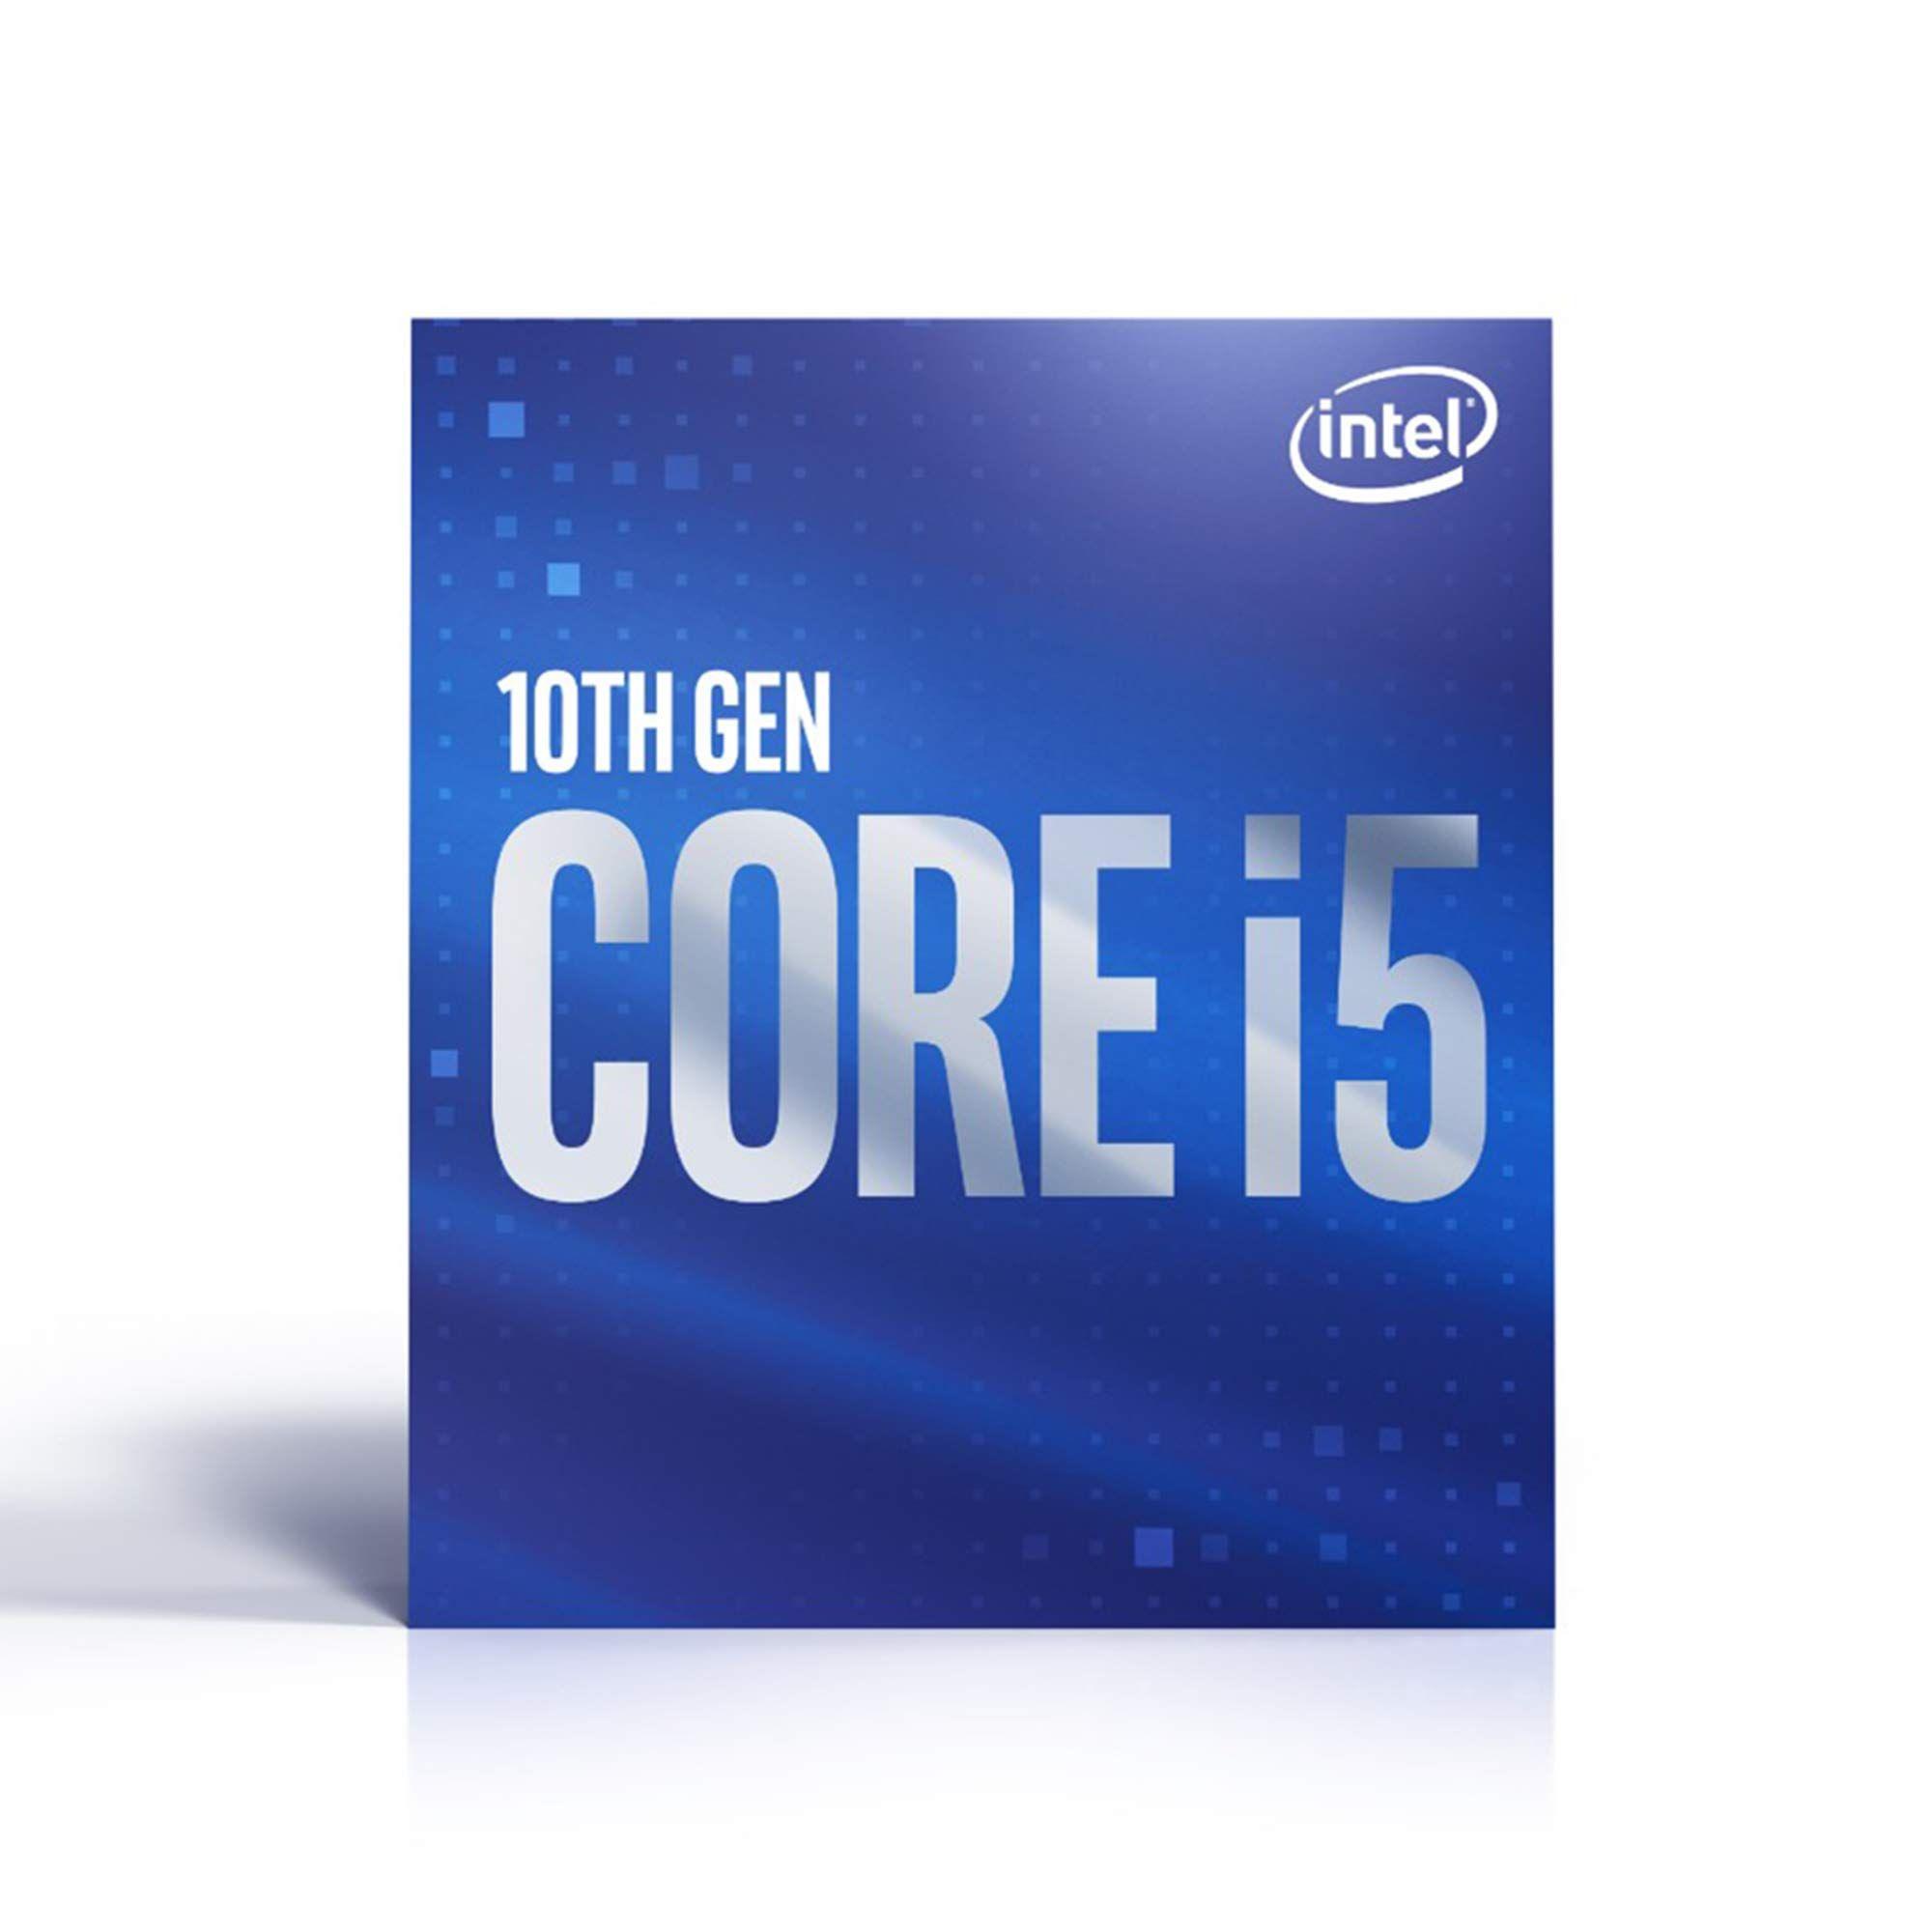 Intel 10th Gen Core i5-10500 Processor Price in Nepal